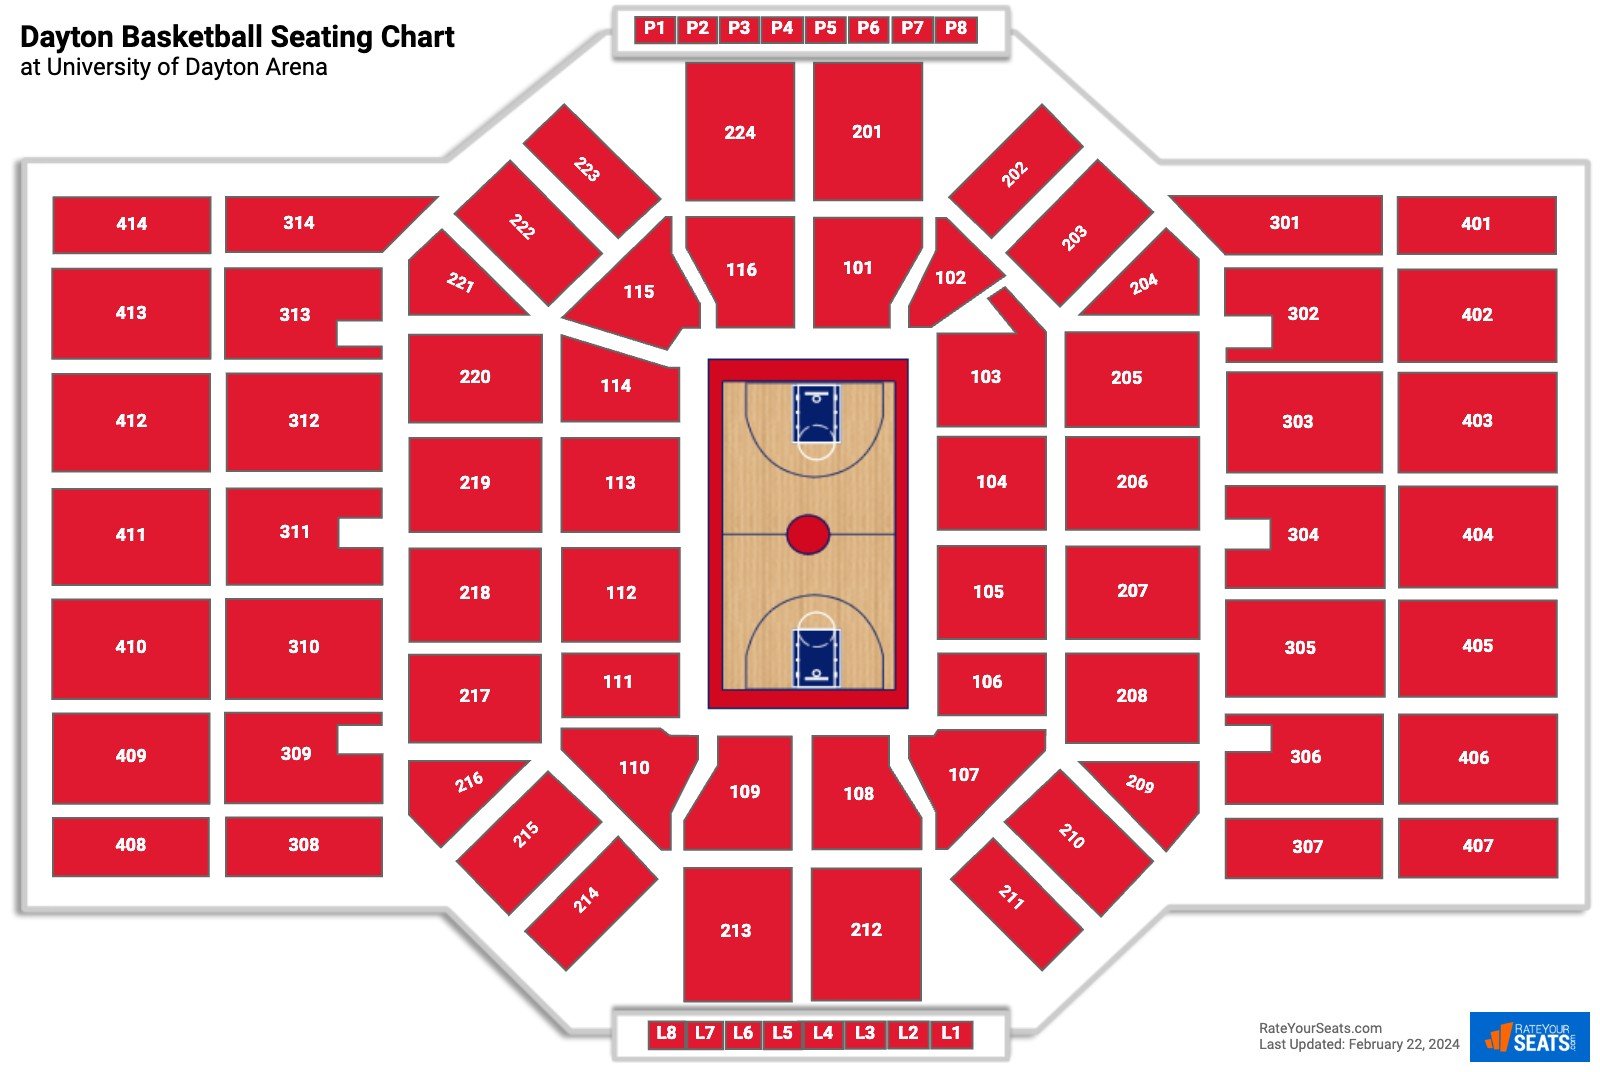 Dayton Flyers Seating Chart at University of Dayton Arena